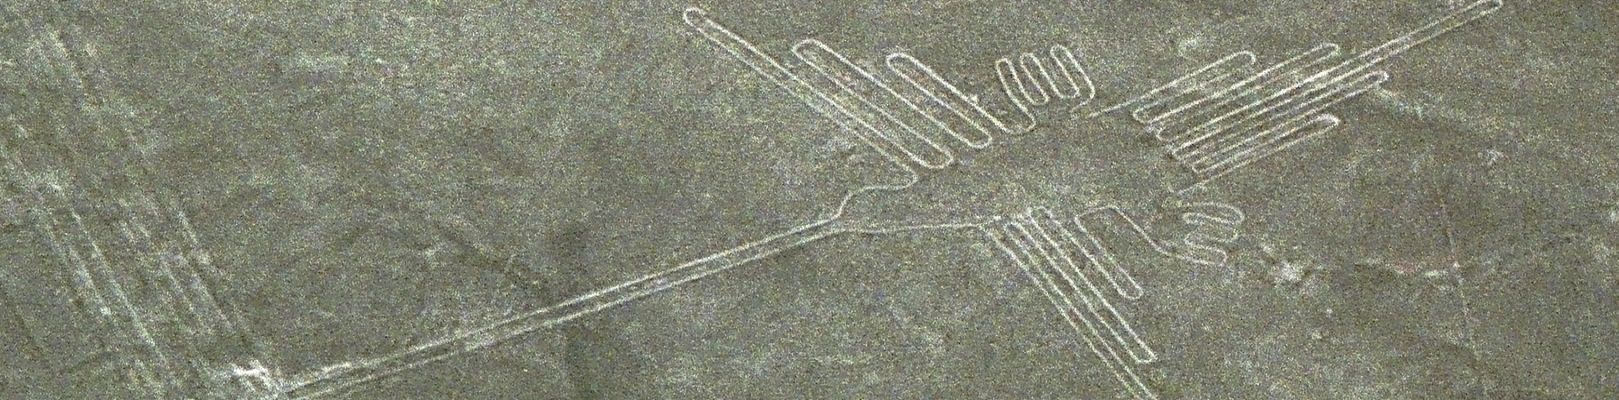 lignes-de-nazca-colibri